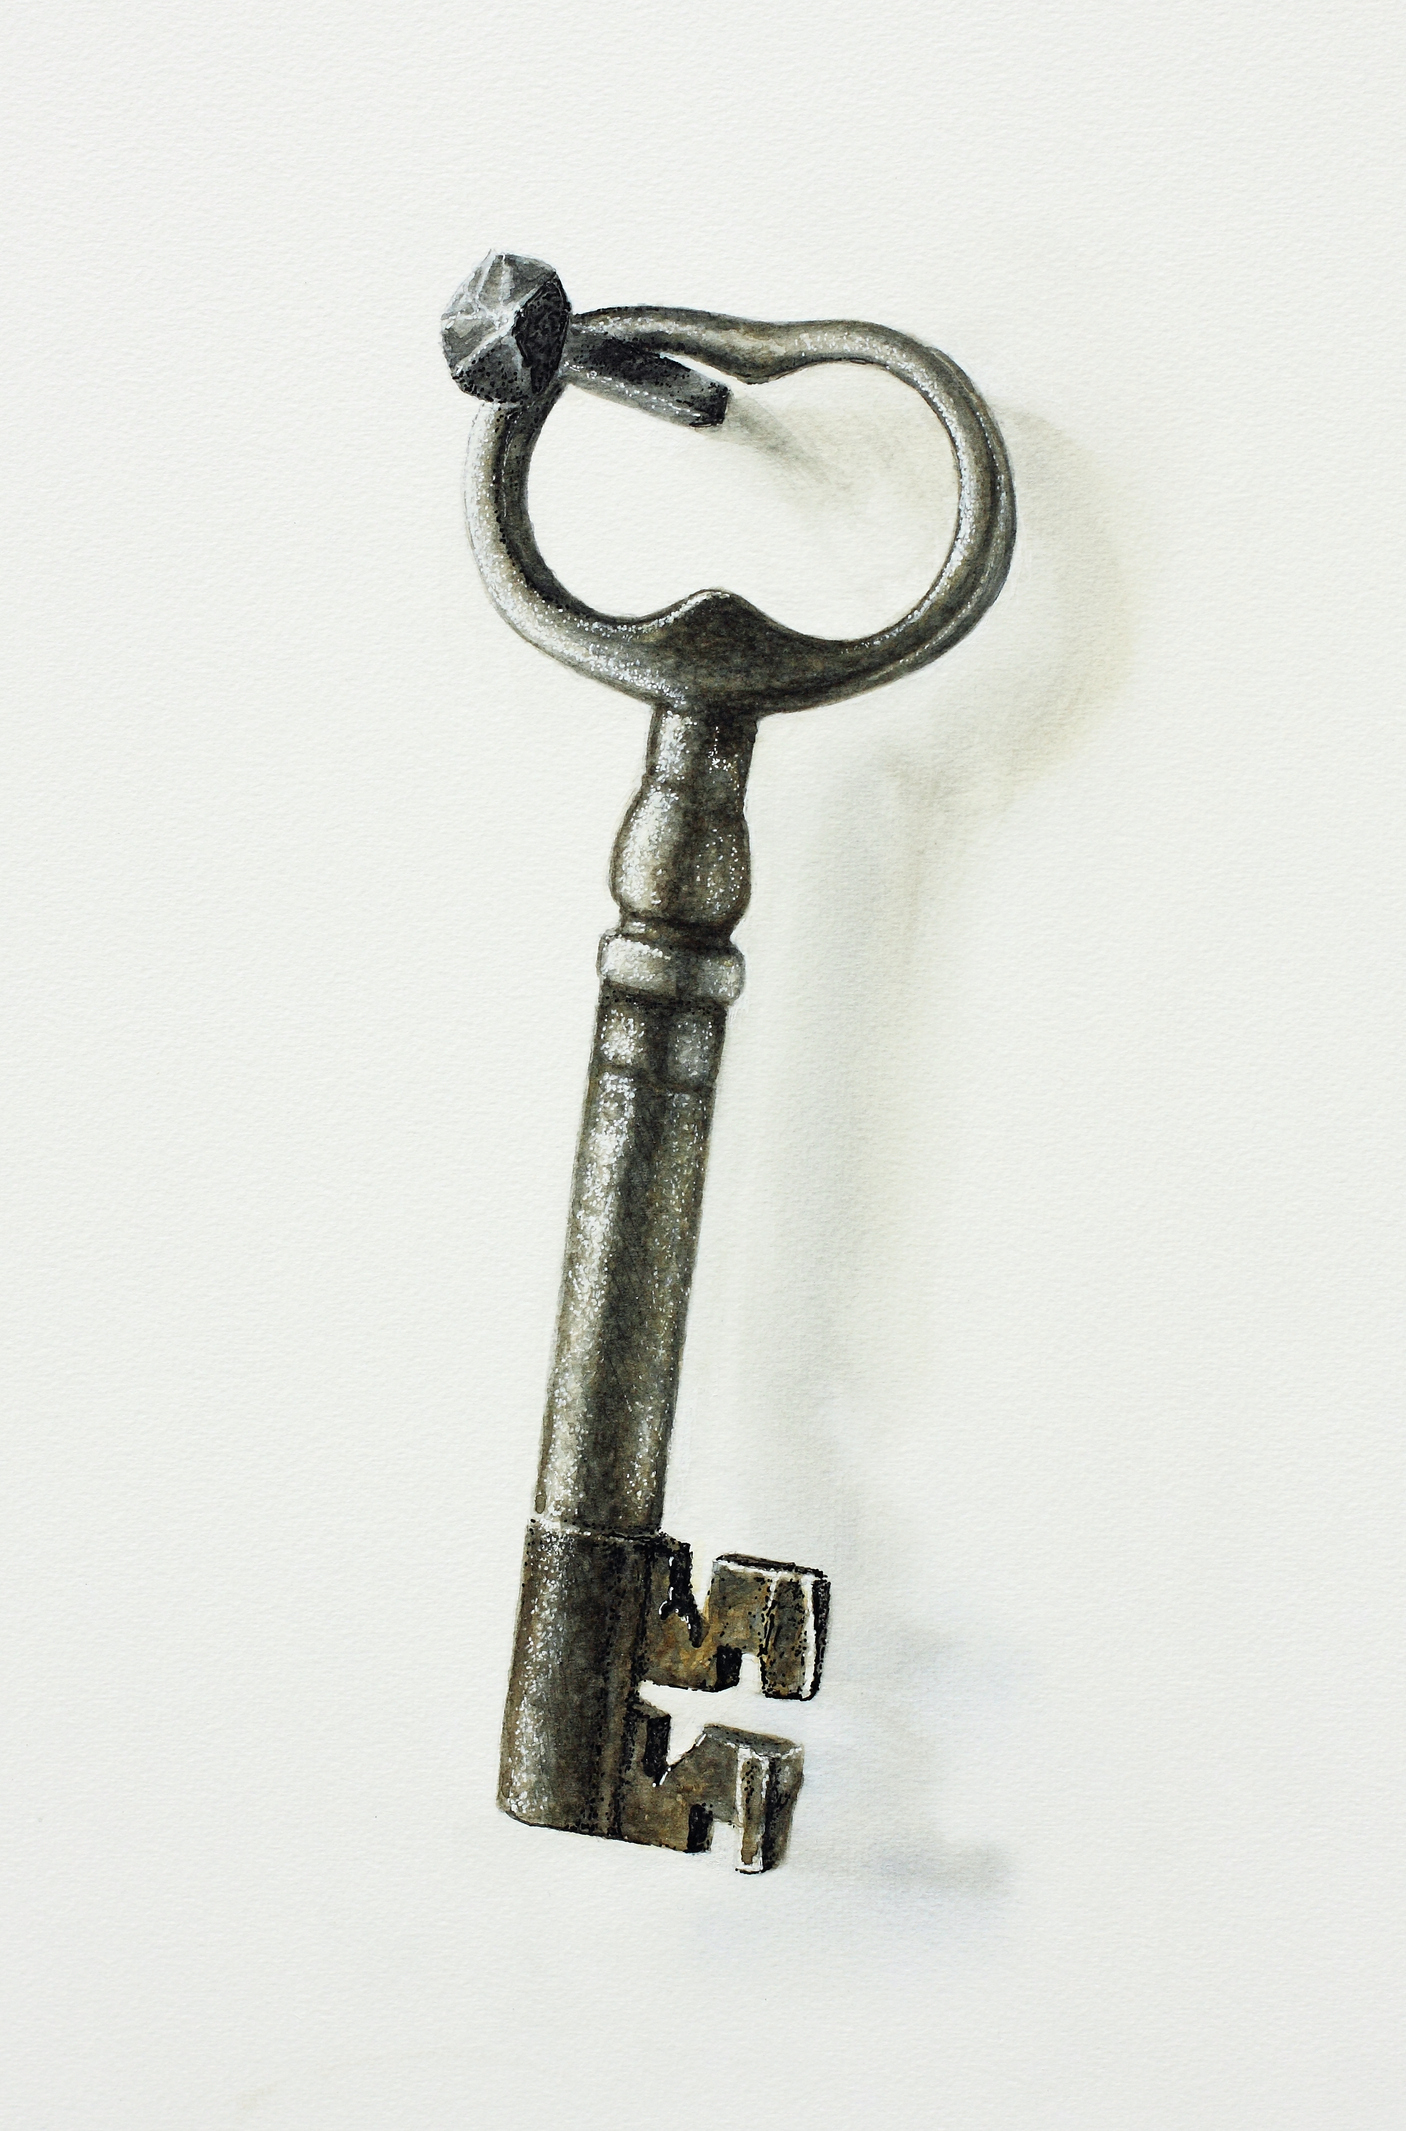 Vintage skeleton key against a plain background